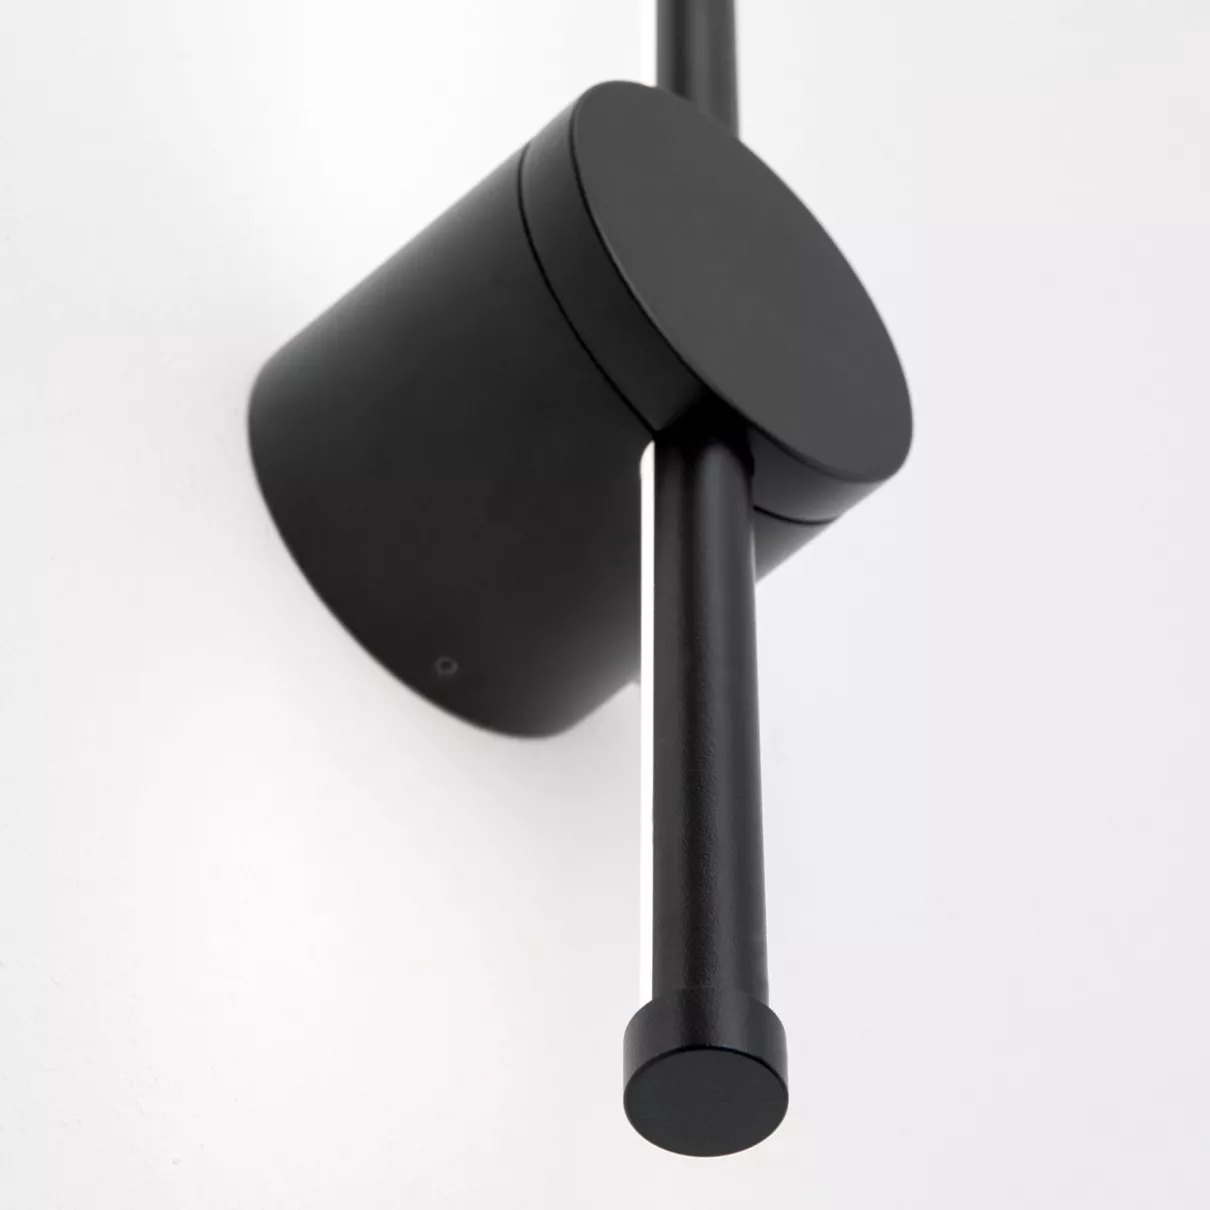 FERDINÁND fürdőszobai lámpa, m:65cm - ORI-WA 2-1473 fekete